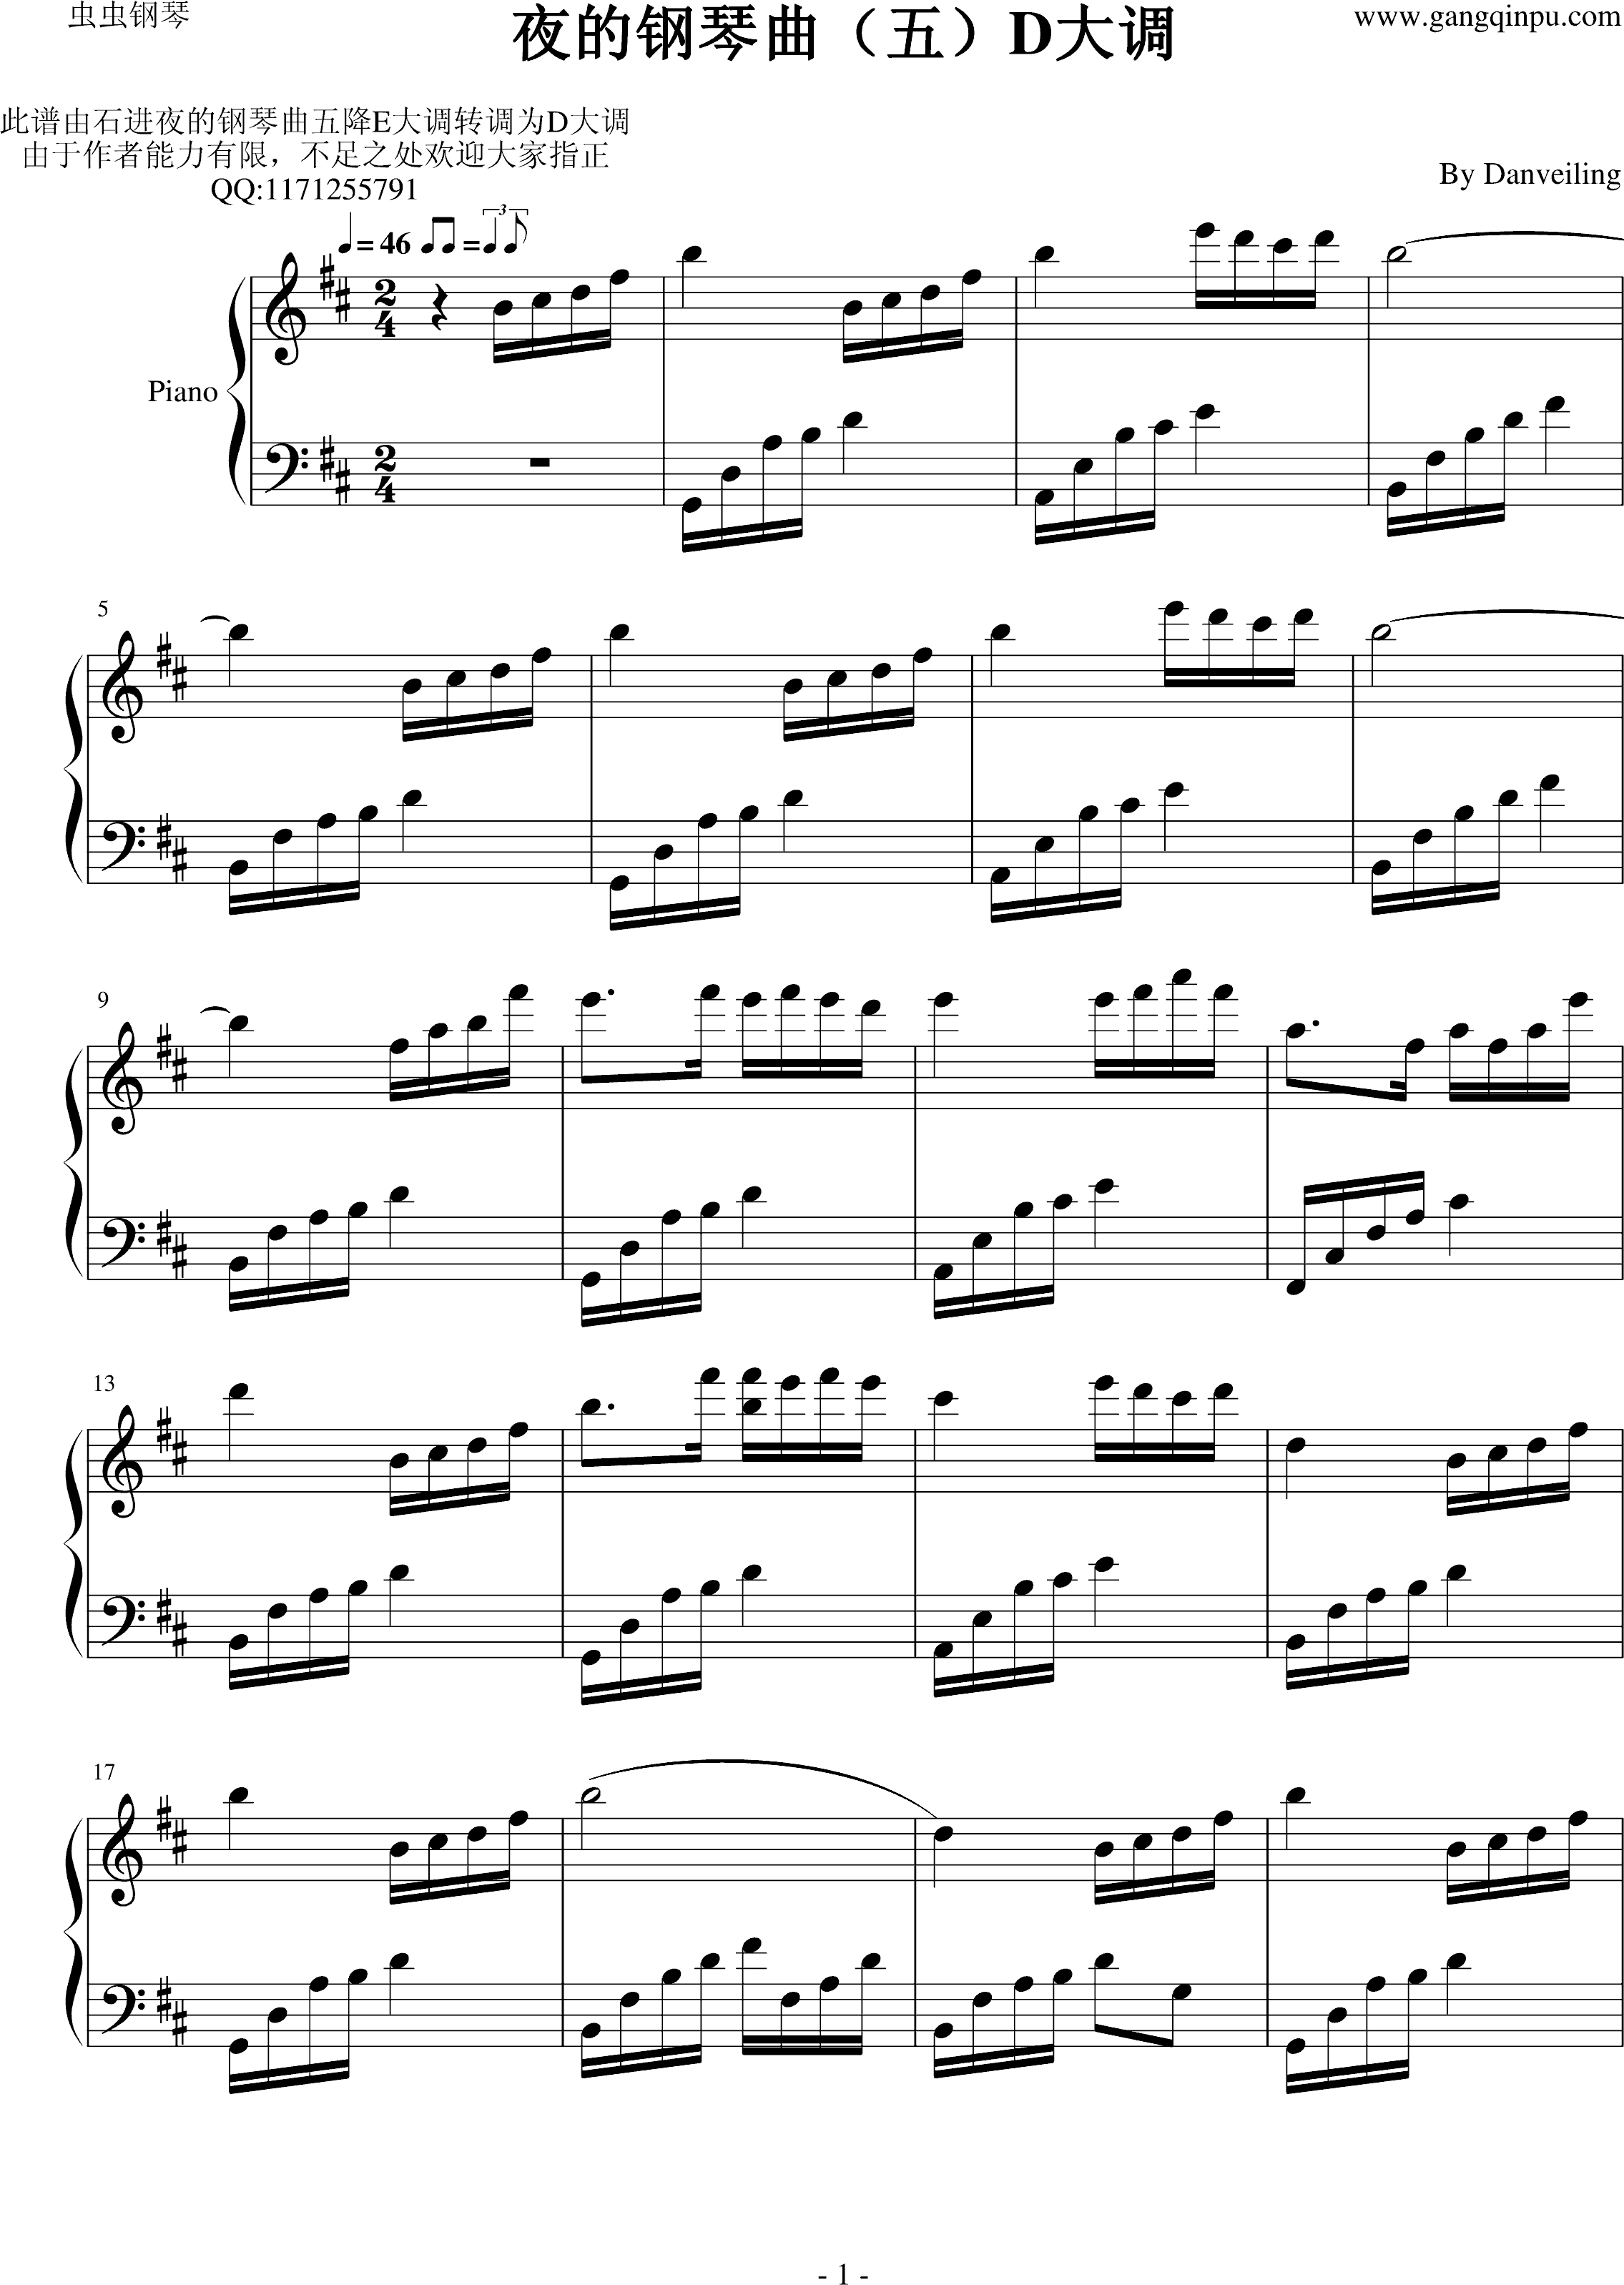 夜的钢琴曲（五）D大调钢琴谱